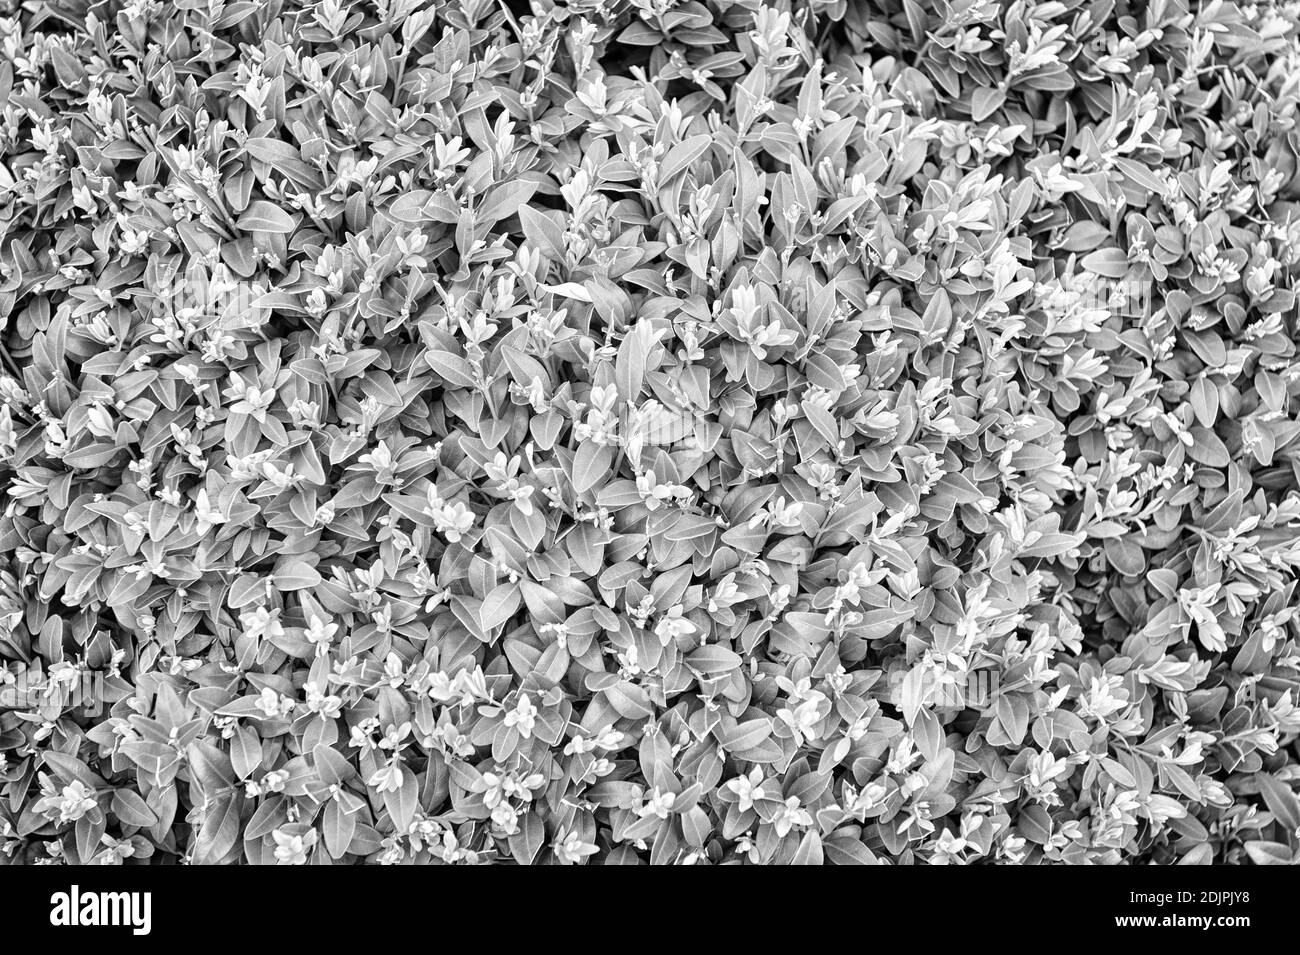 Madera De Boj Imágenes de stock en blanco y negro - Alamy